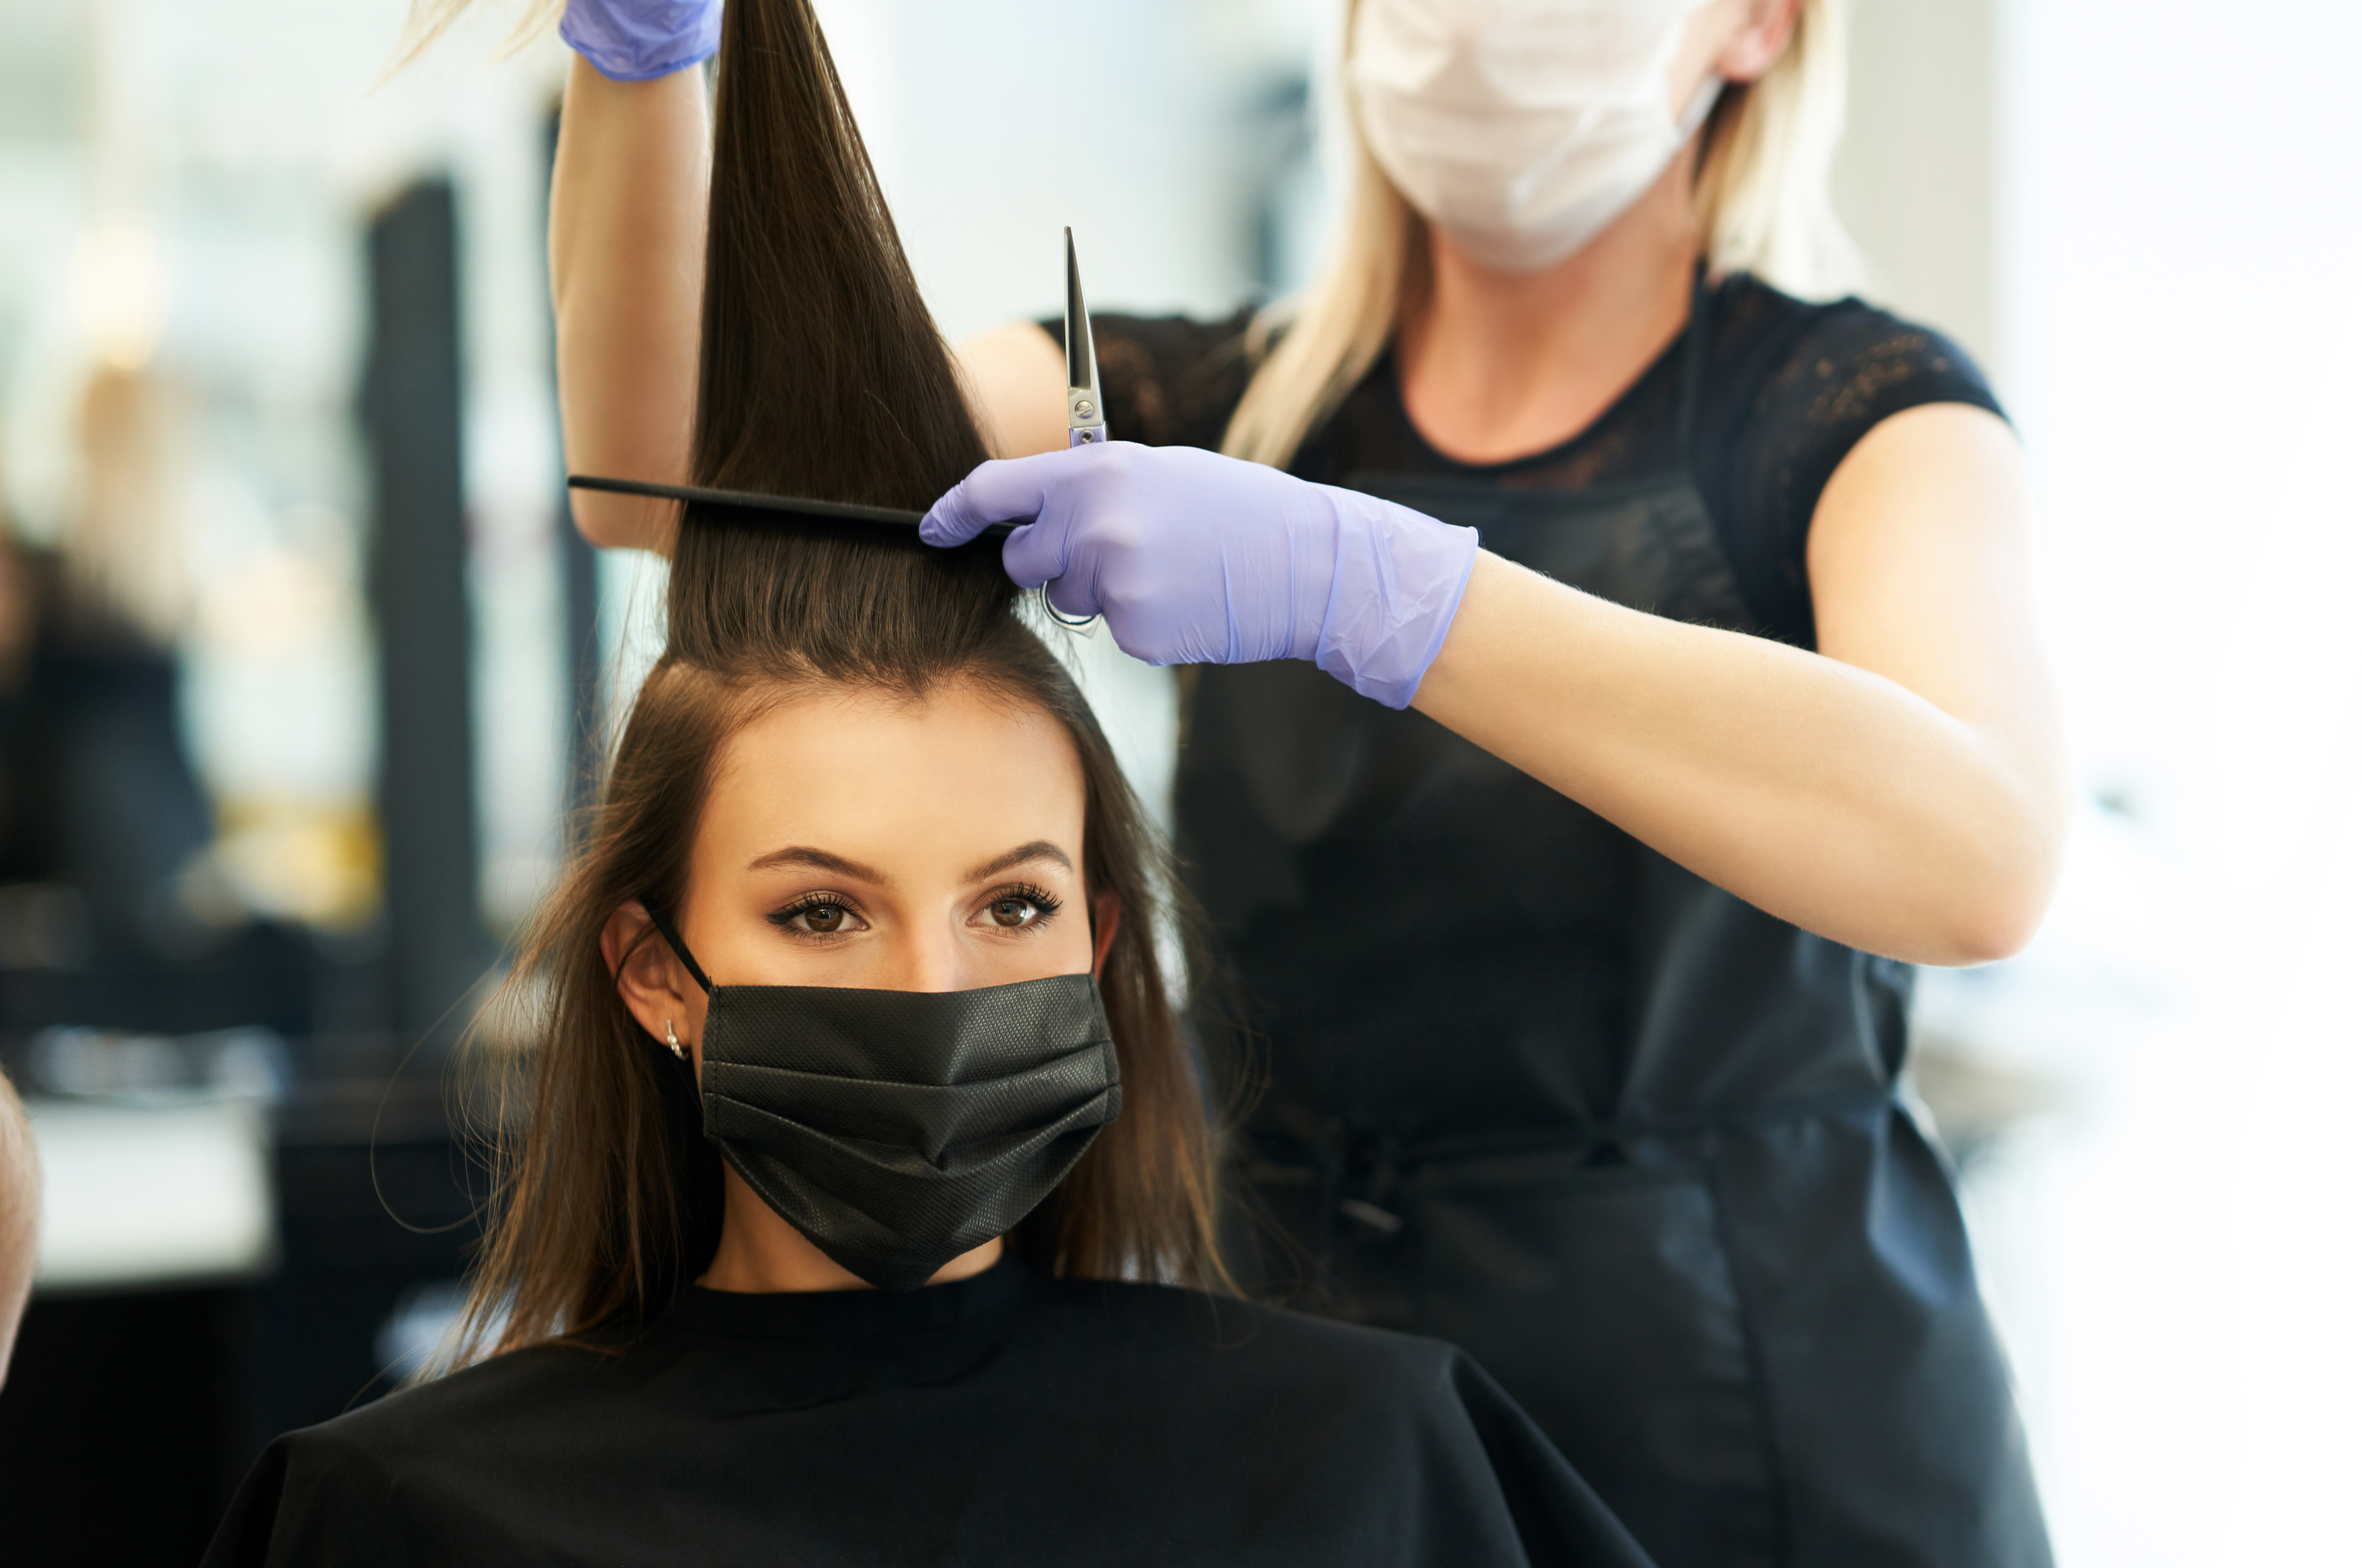 La profession de coiffeuse, entre autres, majore le risque de développer un cancer des ovaires d'après une récente étude. © Kalim, Adobe Stock